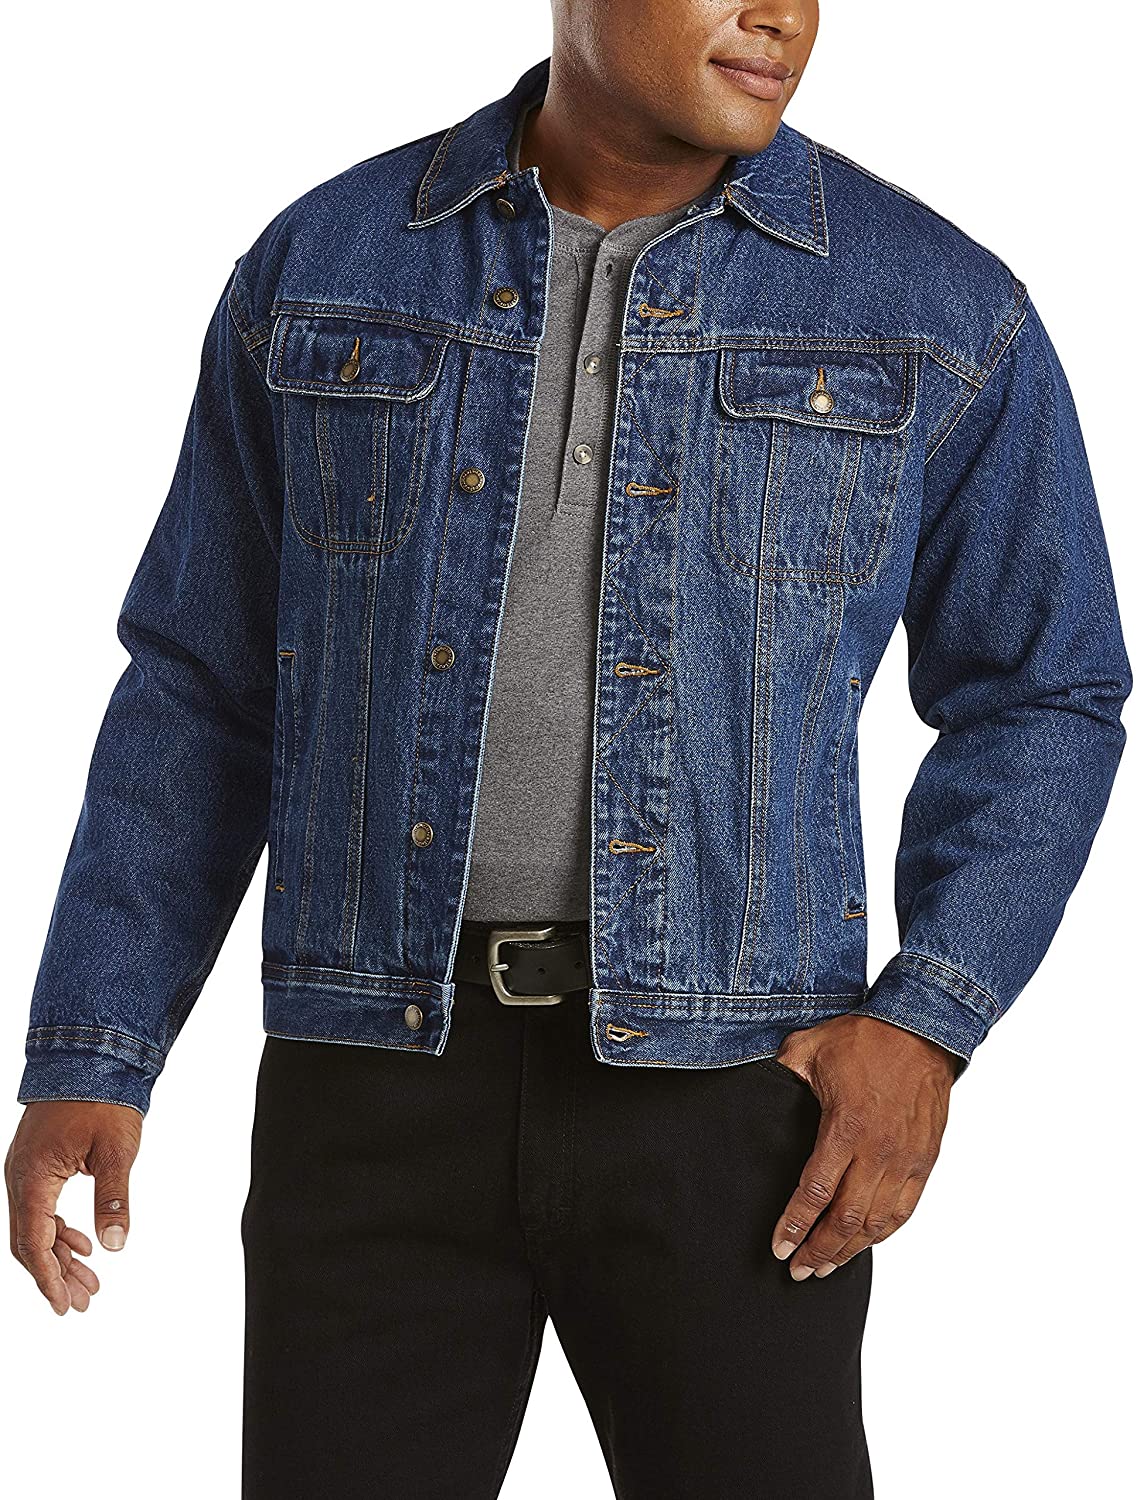 Wrangler Men's Flannel Lined Denim Jacket | eBay